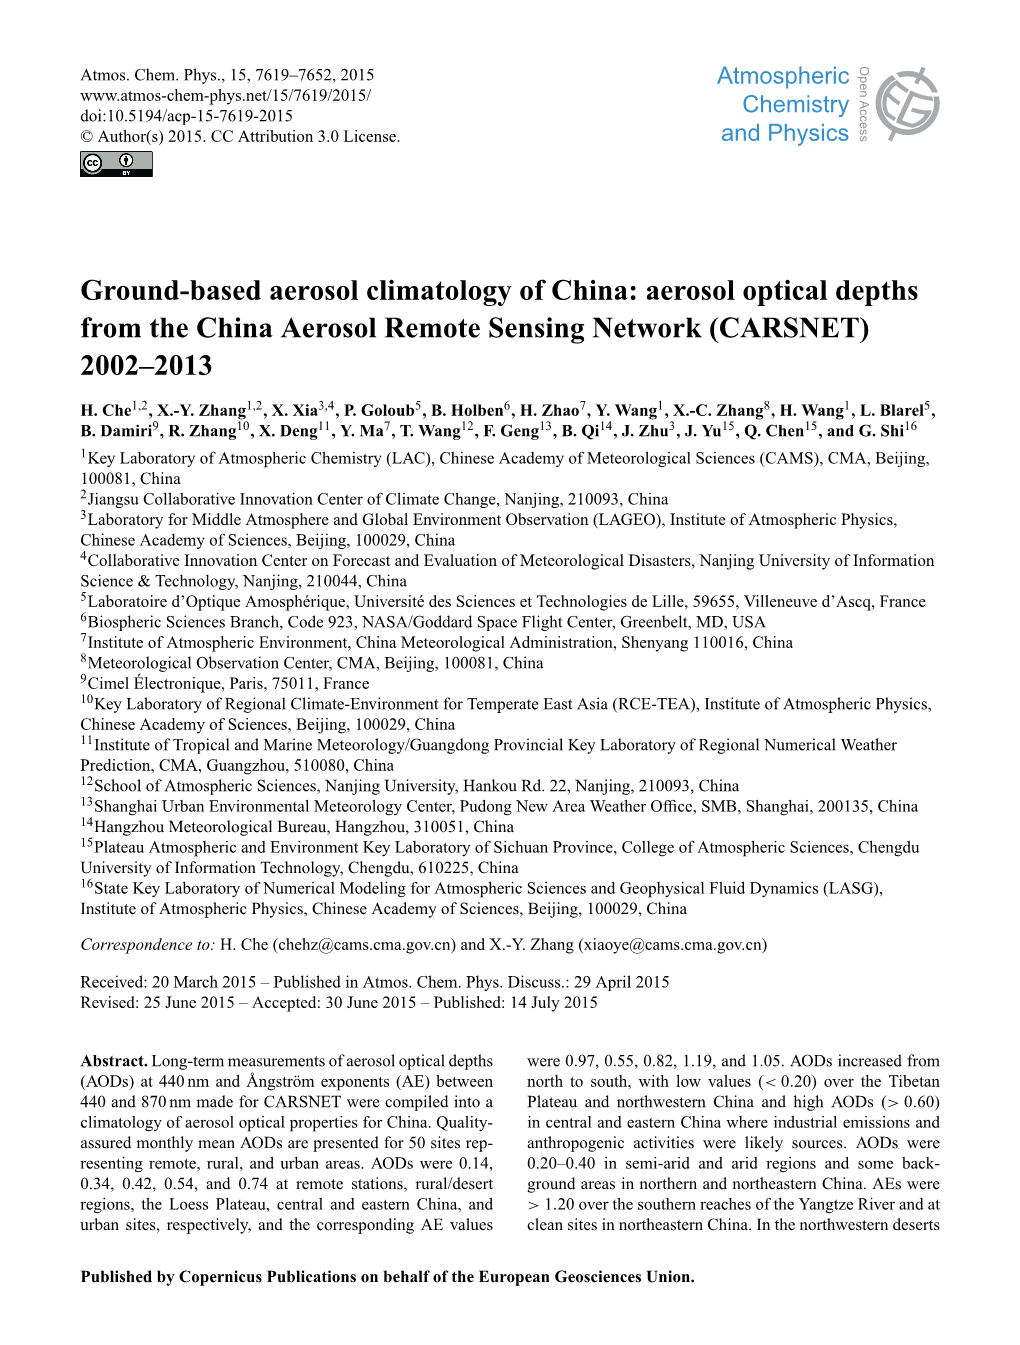 Ground-Based Aerosol Climatology of China: Aerosol Optical Depths from the China Aerosol Remote Sensing Network (CARSNET) 2002–2013